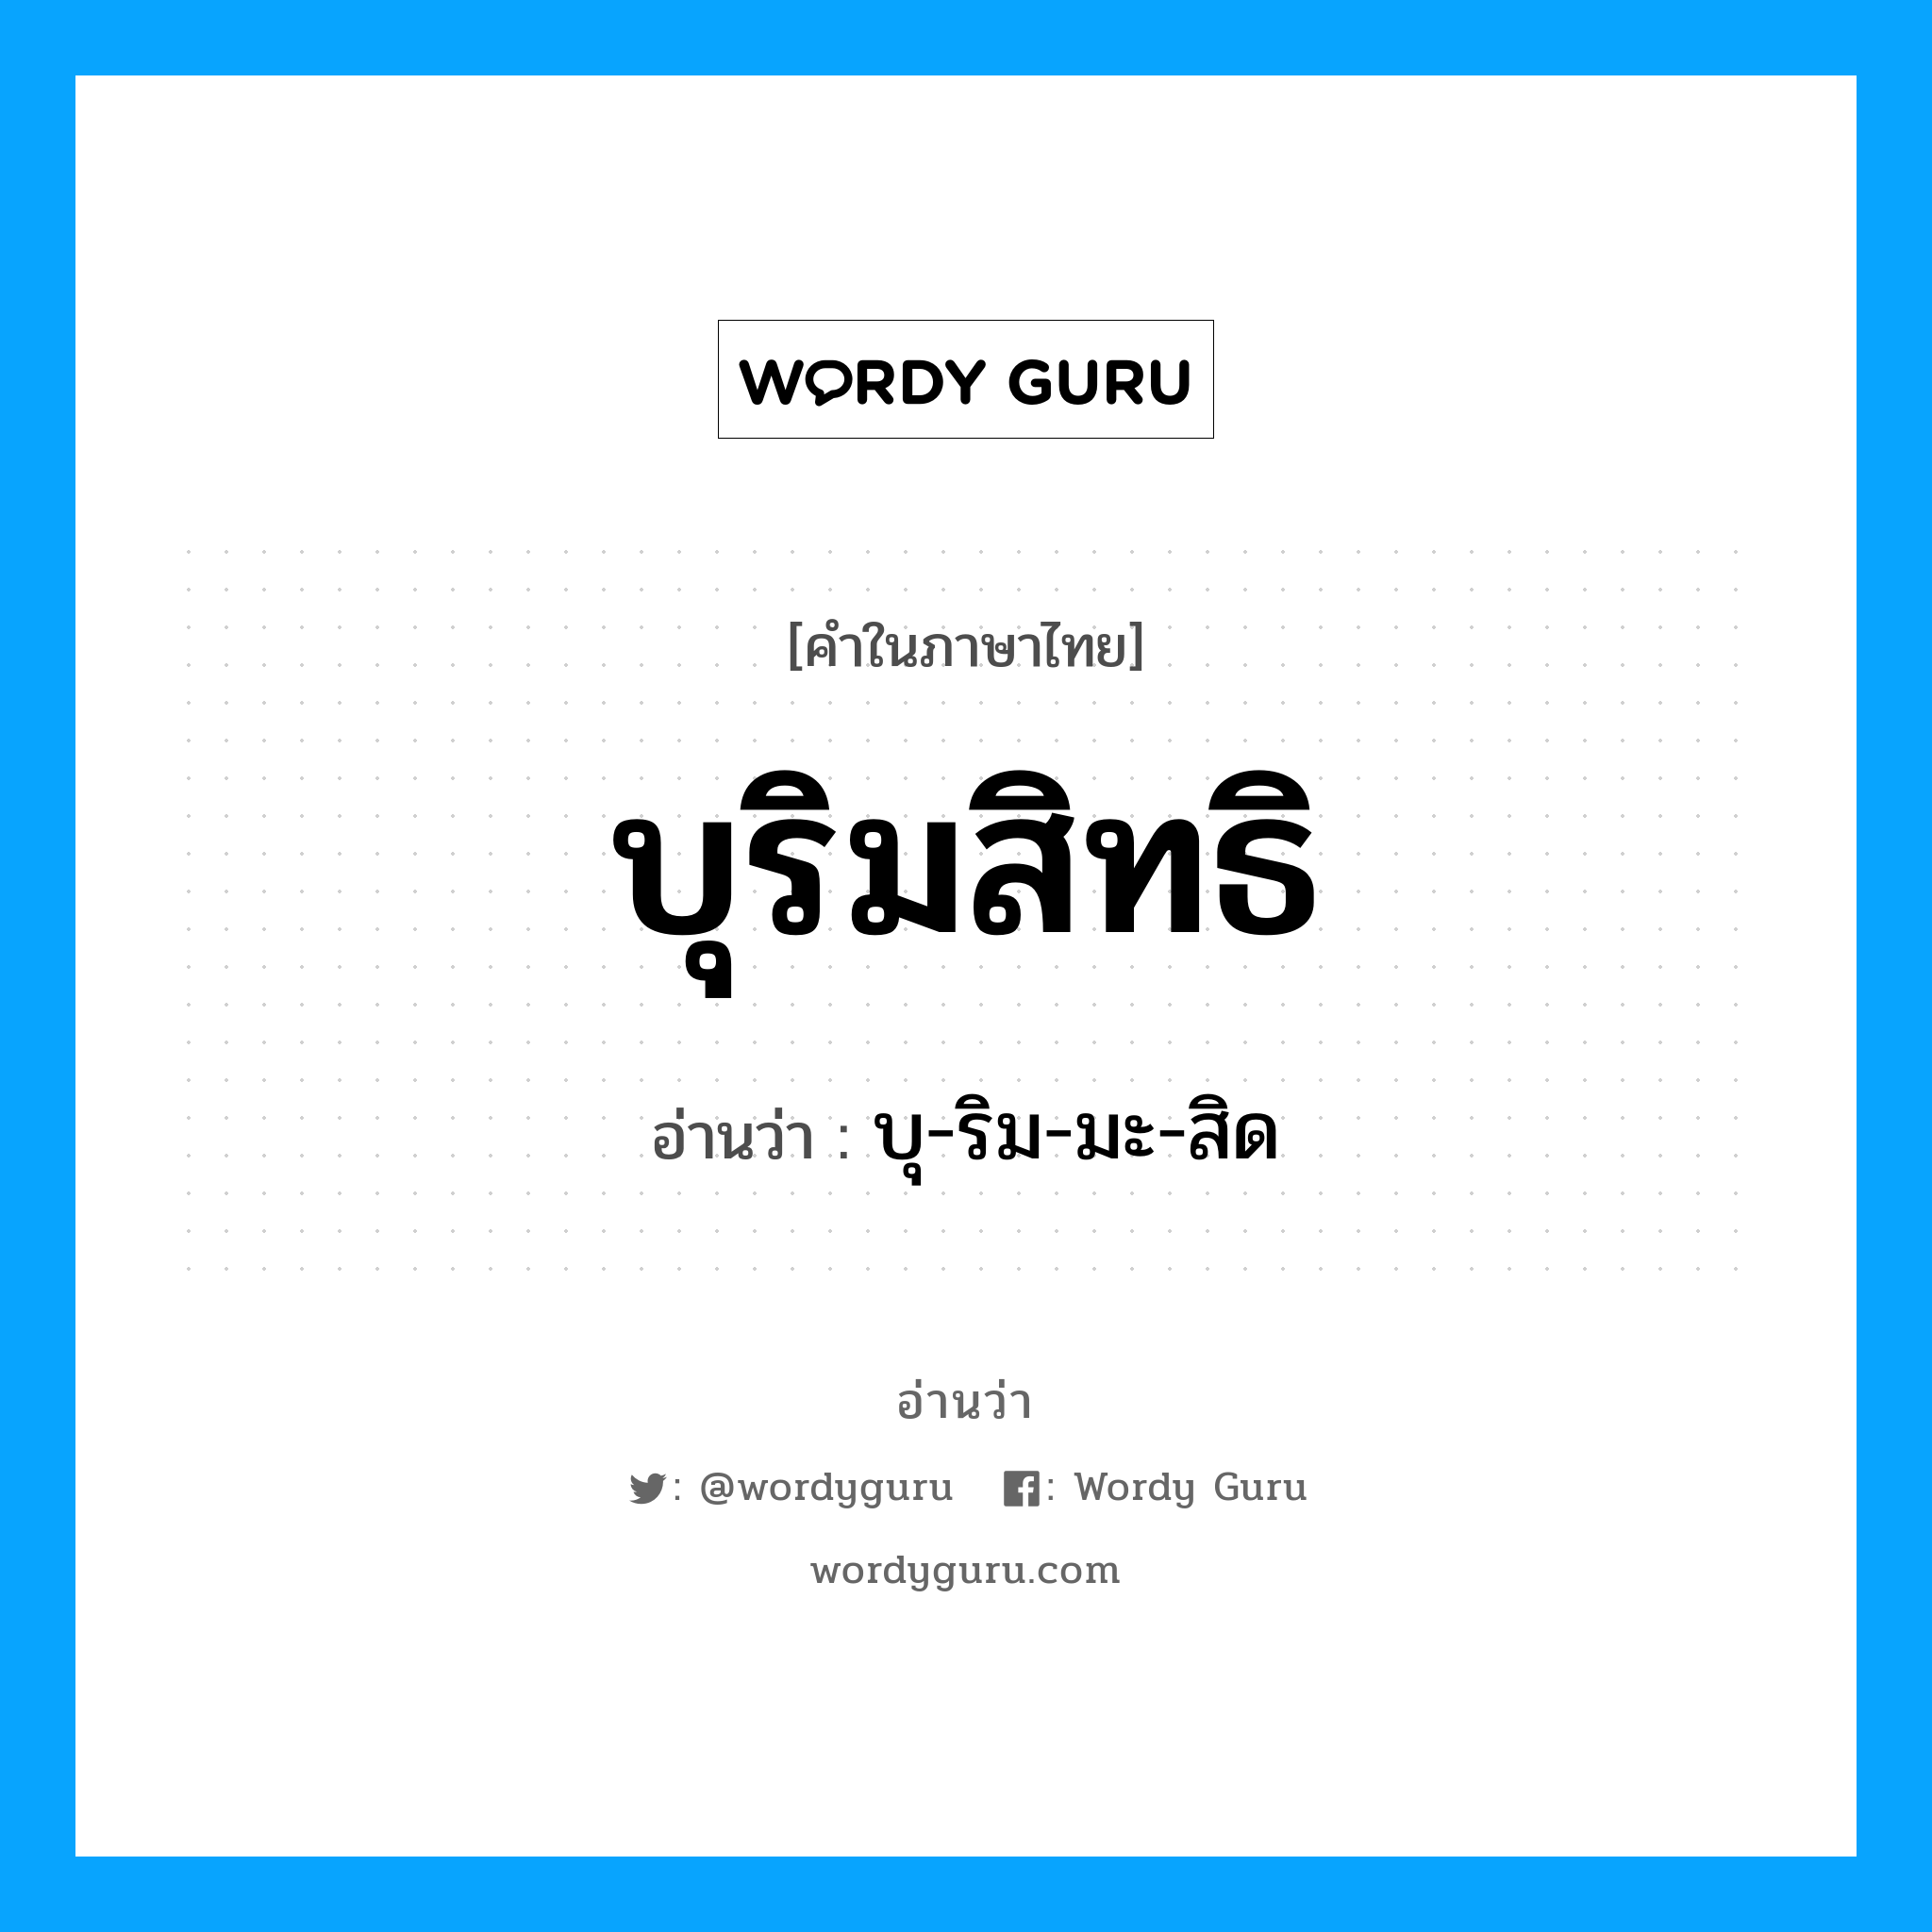 บุ-ริม-มะ-สิด เป็นคำอ่านของคำไหน?, คำในภาษาไทย บุ-ริม-มะ-สิด อ่านว่า บุริมสิทธิ